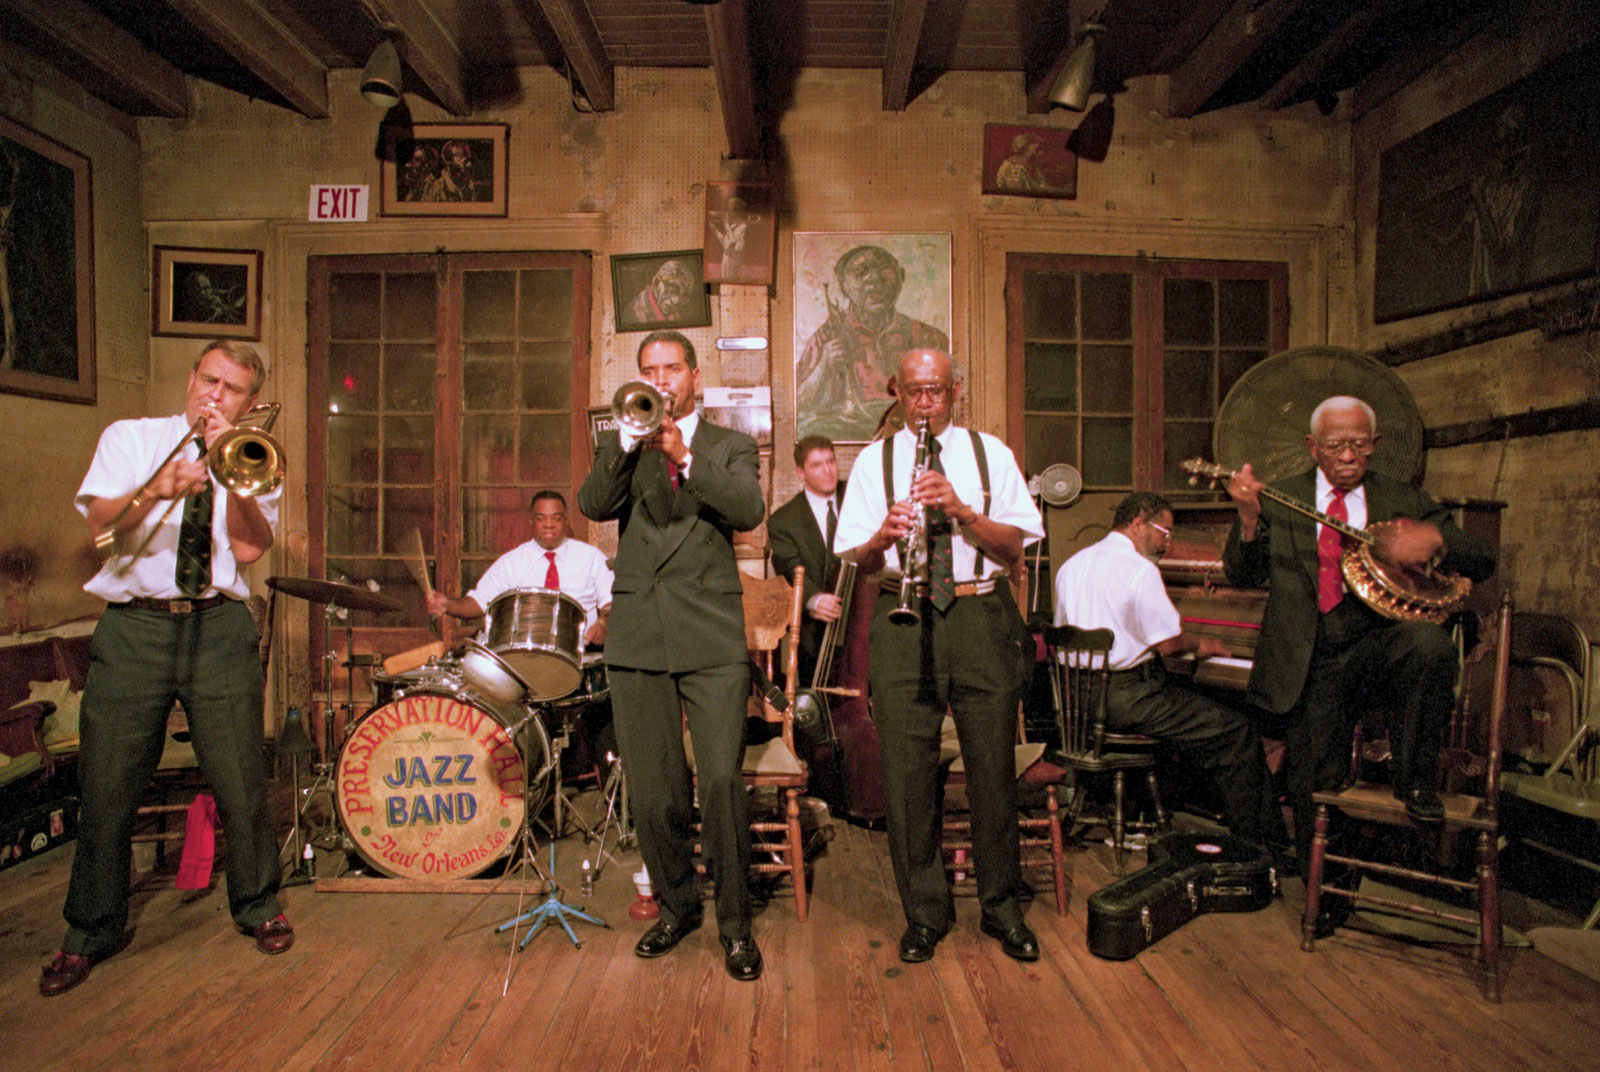 New Orleans Jazzmen (DVD)